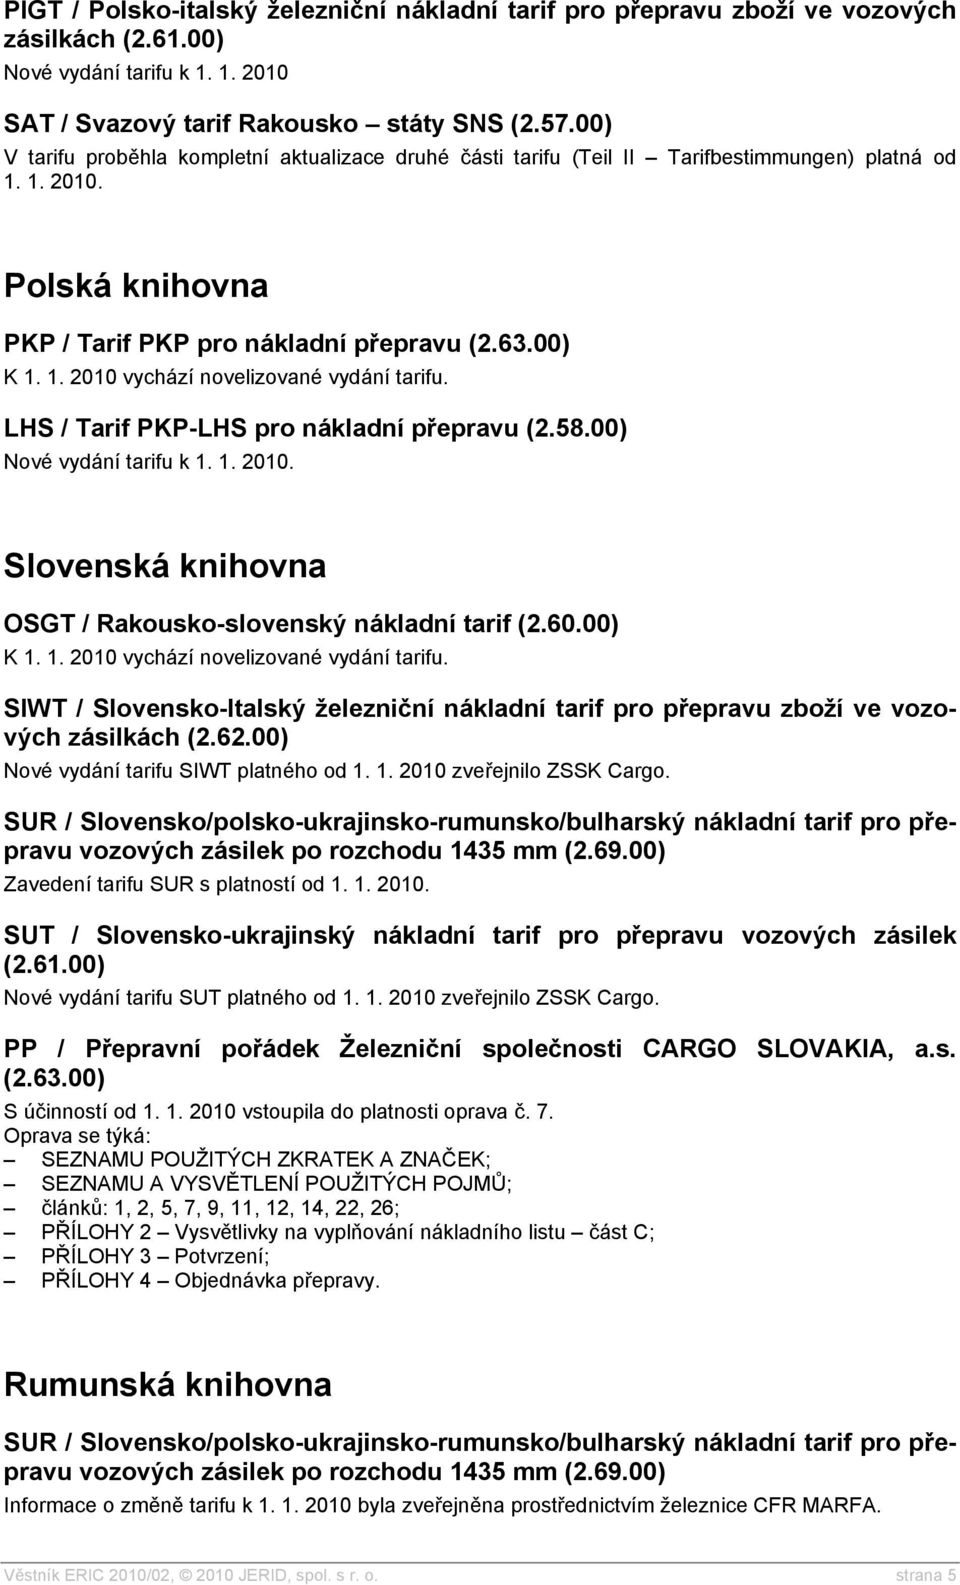 LHS / Tarif PKP-LHS pro nákladní přepravu (2.58.00) Nové vydání tarifu k 1. 1. 2010. Slovenská knihovna OSGT / Rakousko-slovenský nákladní tarif (2.60.00) K 1. 1. 2010 vychází novelizované vydání tarifu.